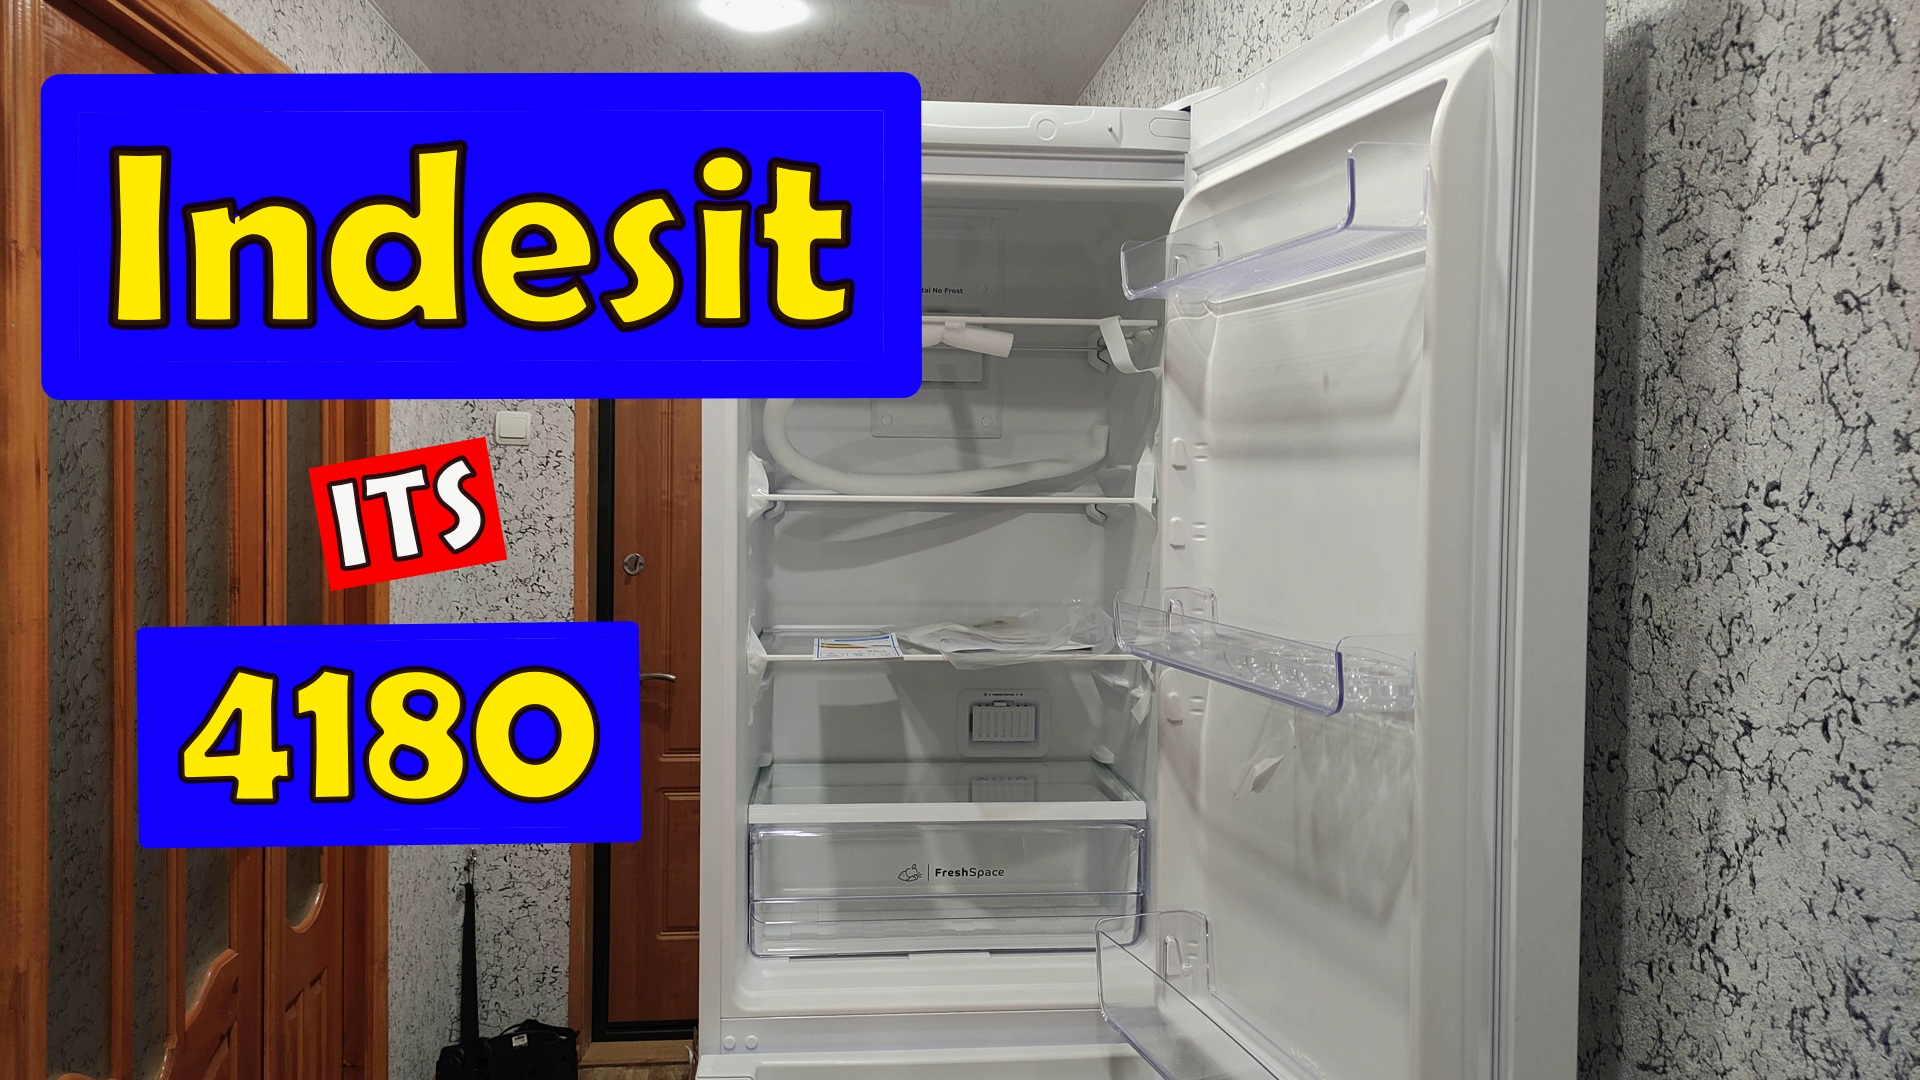 Холодильник Indesit ITS 4180 краткий обзор.  No Frost